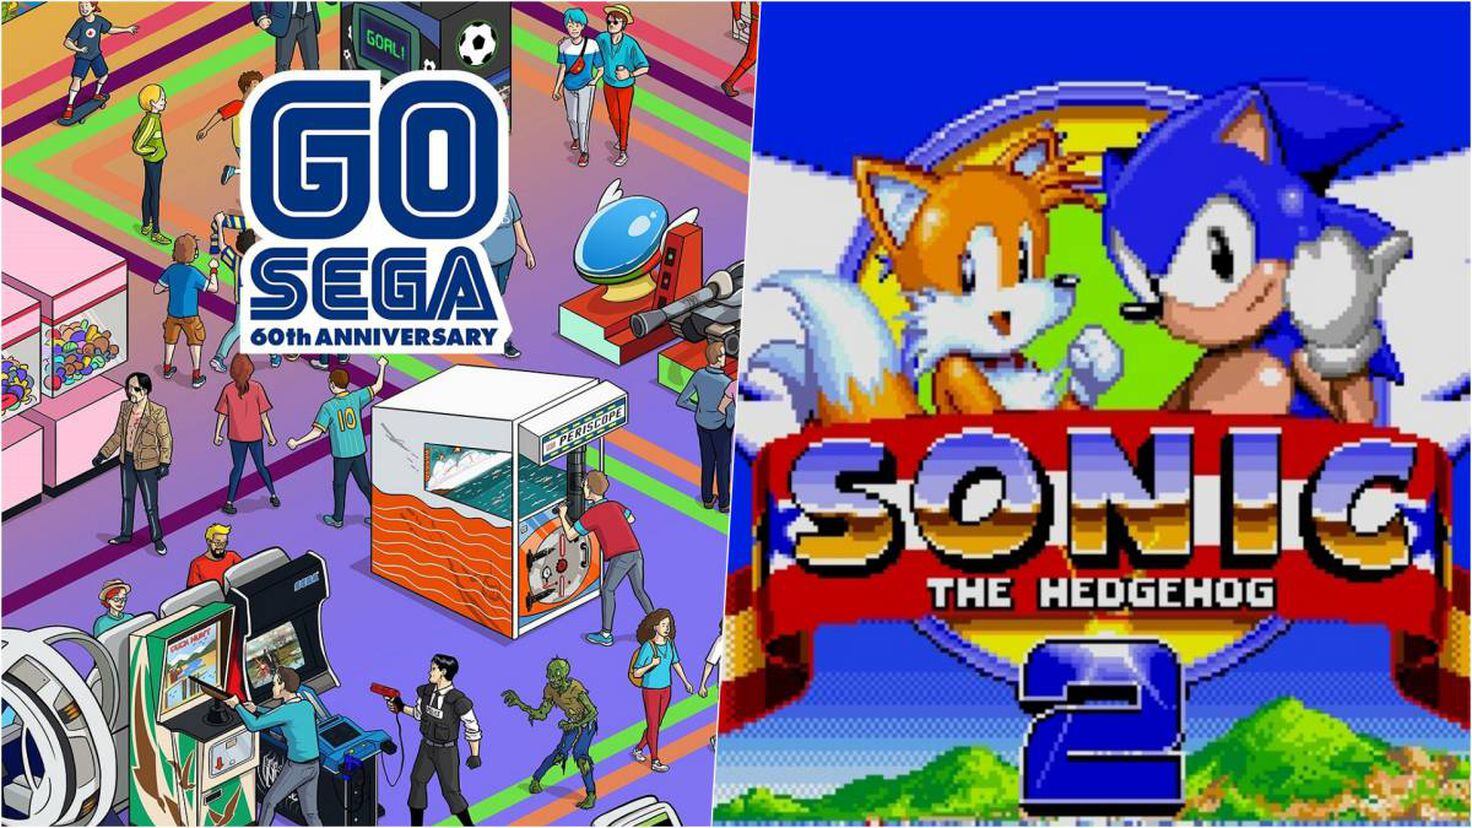 Sonic The Hedgehog 2 está de graça no Steam para celebrar os 60 anos da SEGA  - NerdBunker